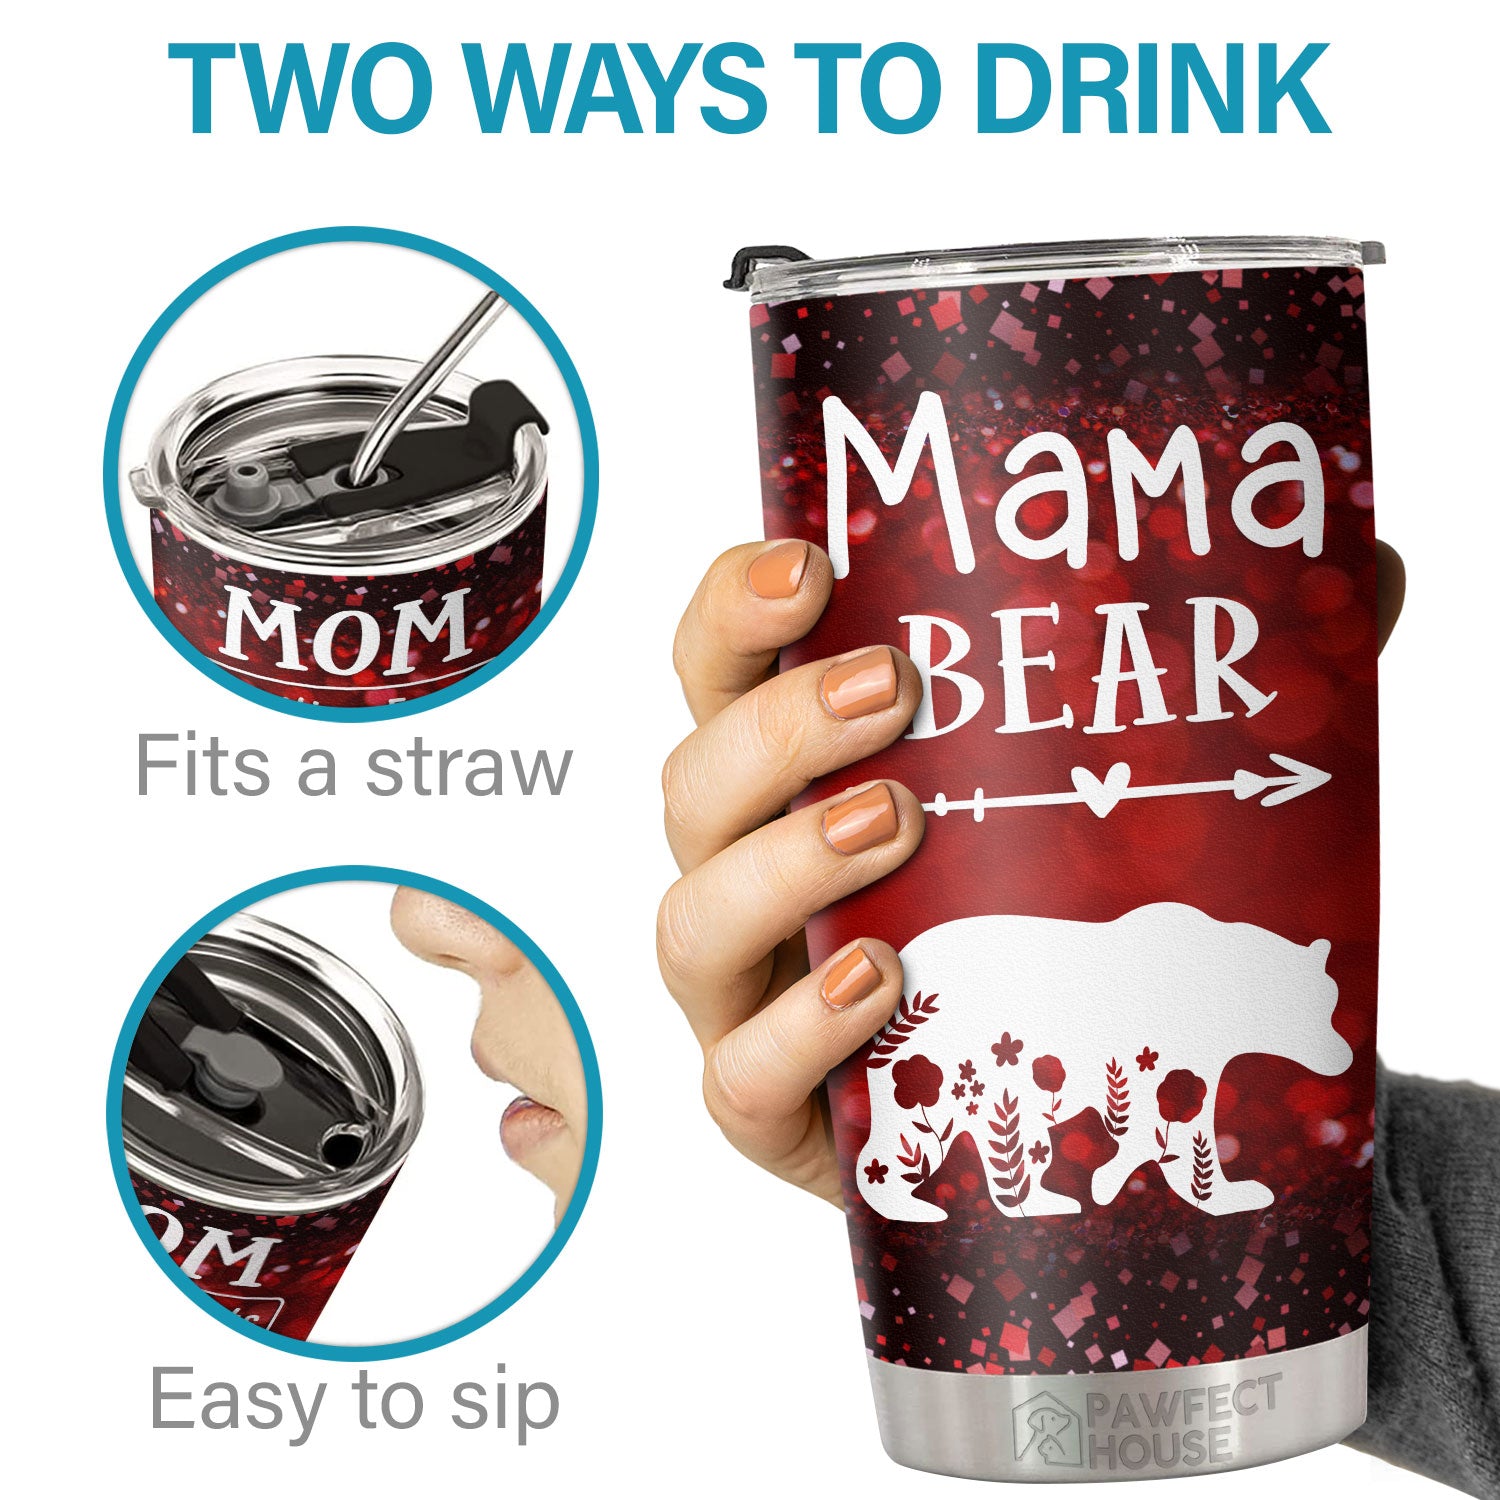 MAMA BEAR MUG – Full Circle Gifts & Goods